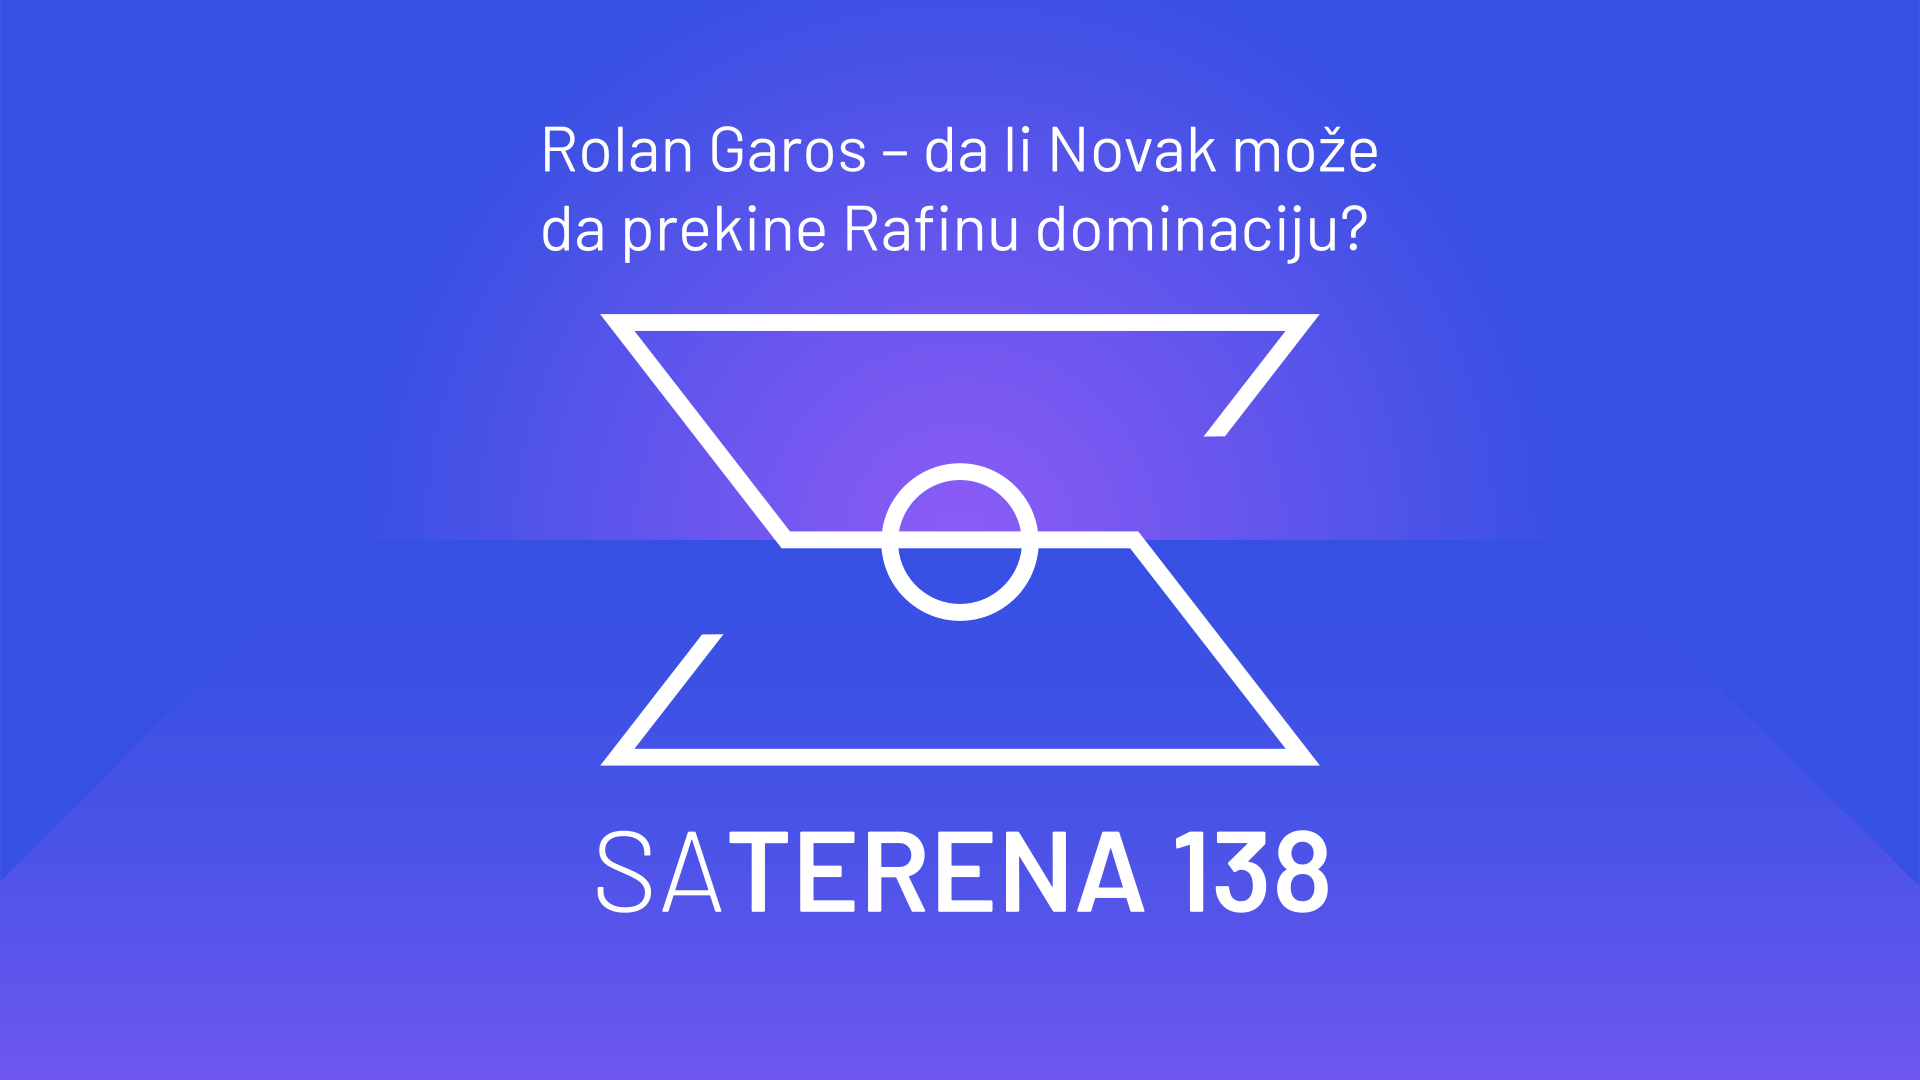 Sa terena 138: Rolan Garos – da li Novak može da prekine Rafinu dominaciju?